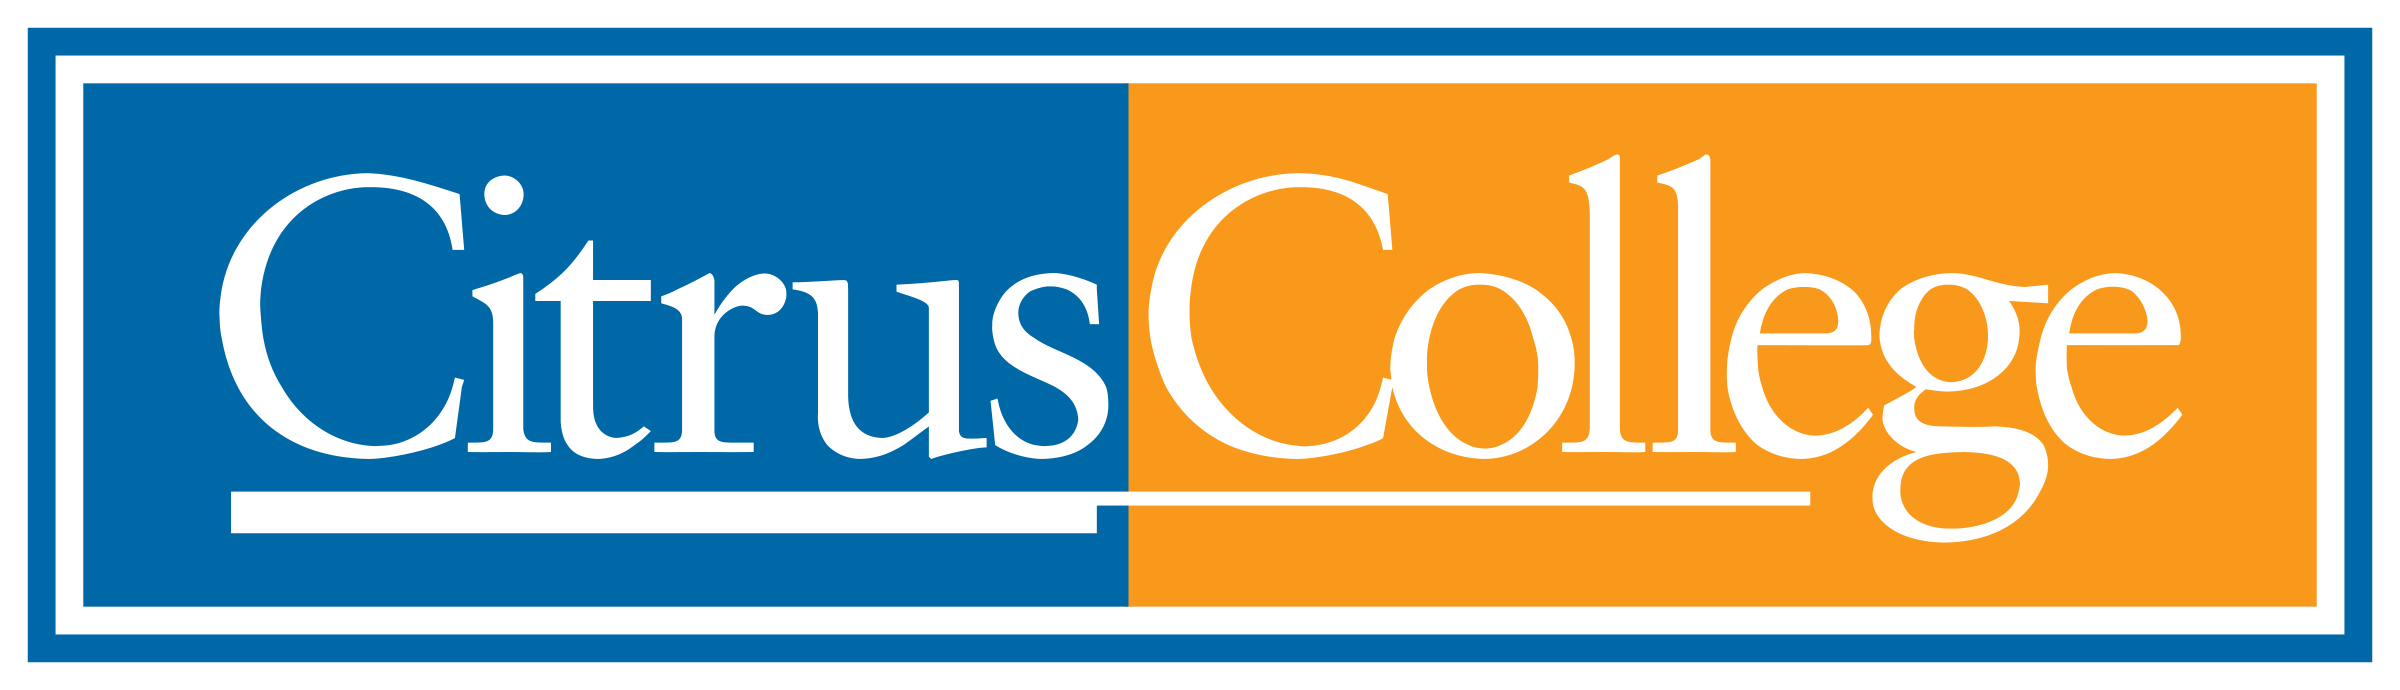 Citrus College - logo